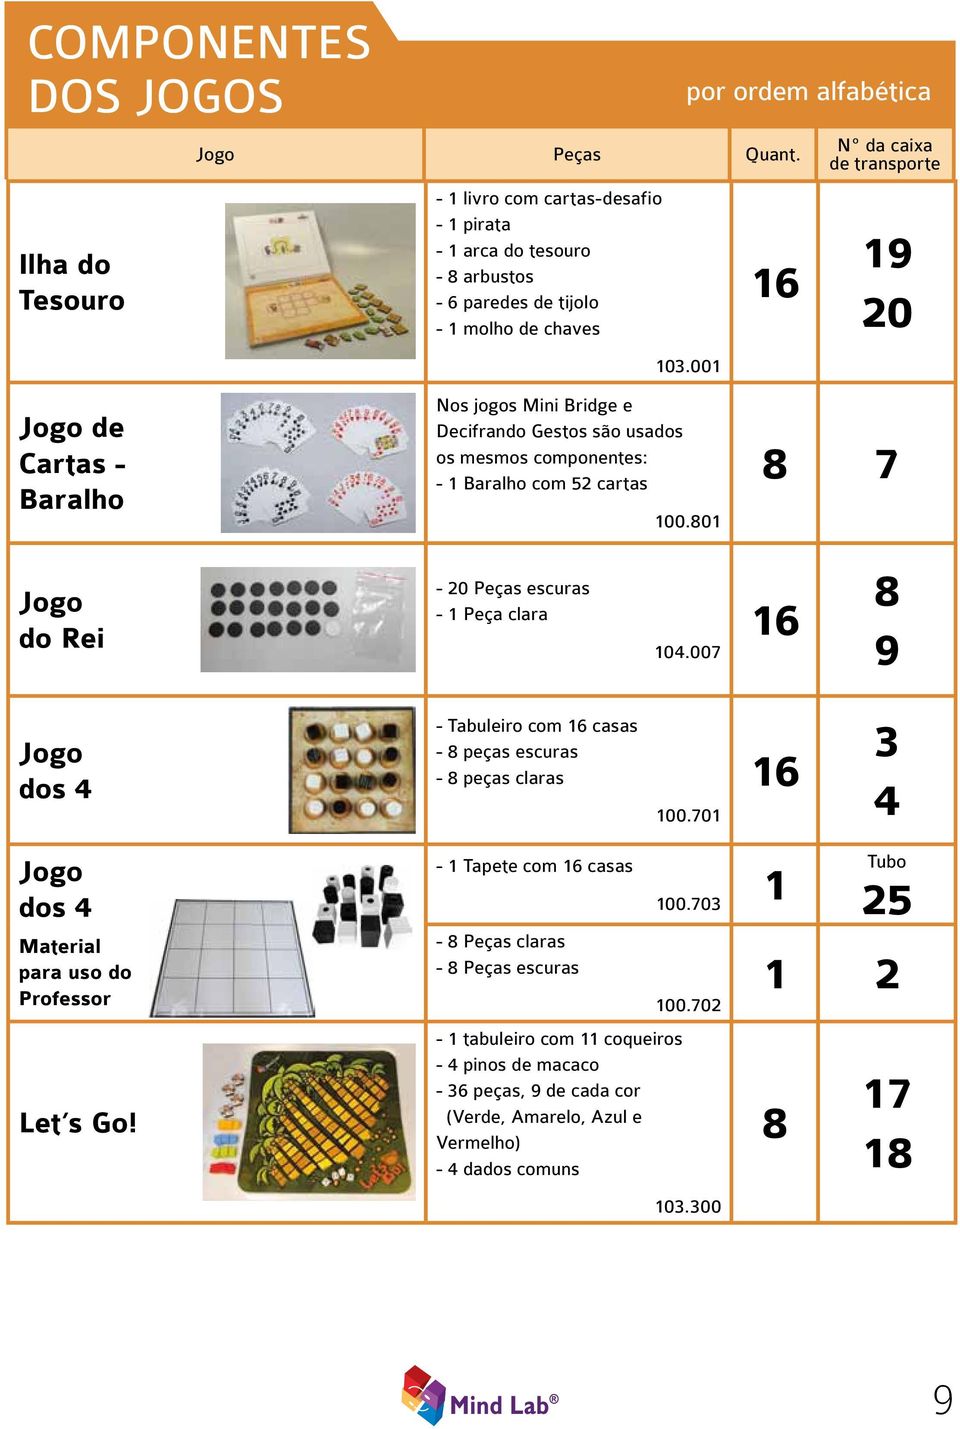 00 9 20 Jogo de Cartas - Baralho Nos jogos Mini Bridge e Decifrando Gestos são usados os mesmos componentes: - Baralho com 52 cartas 00.